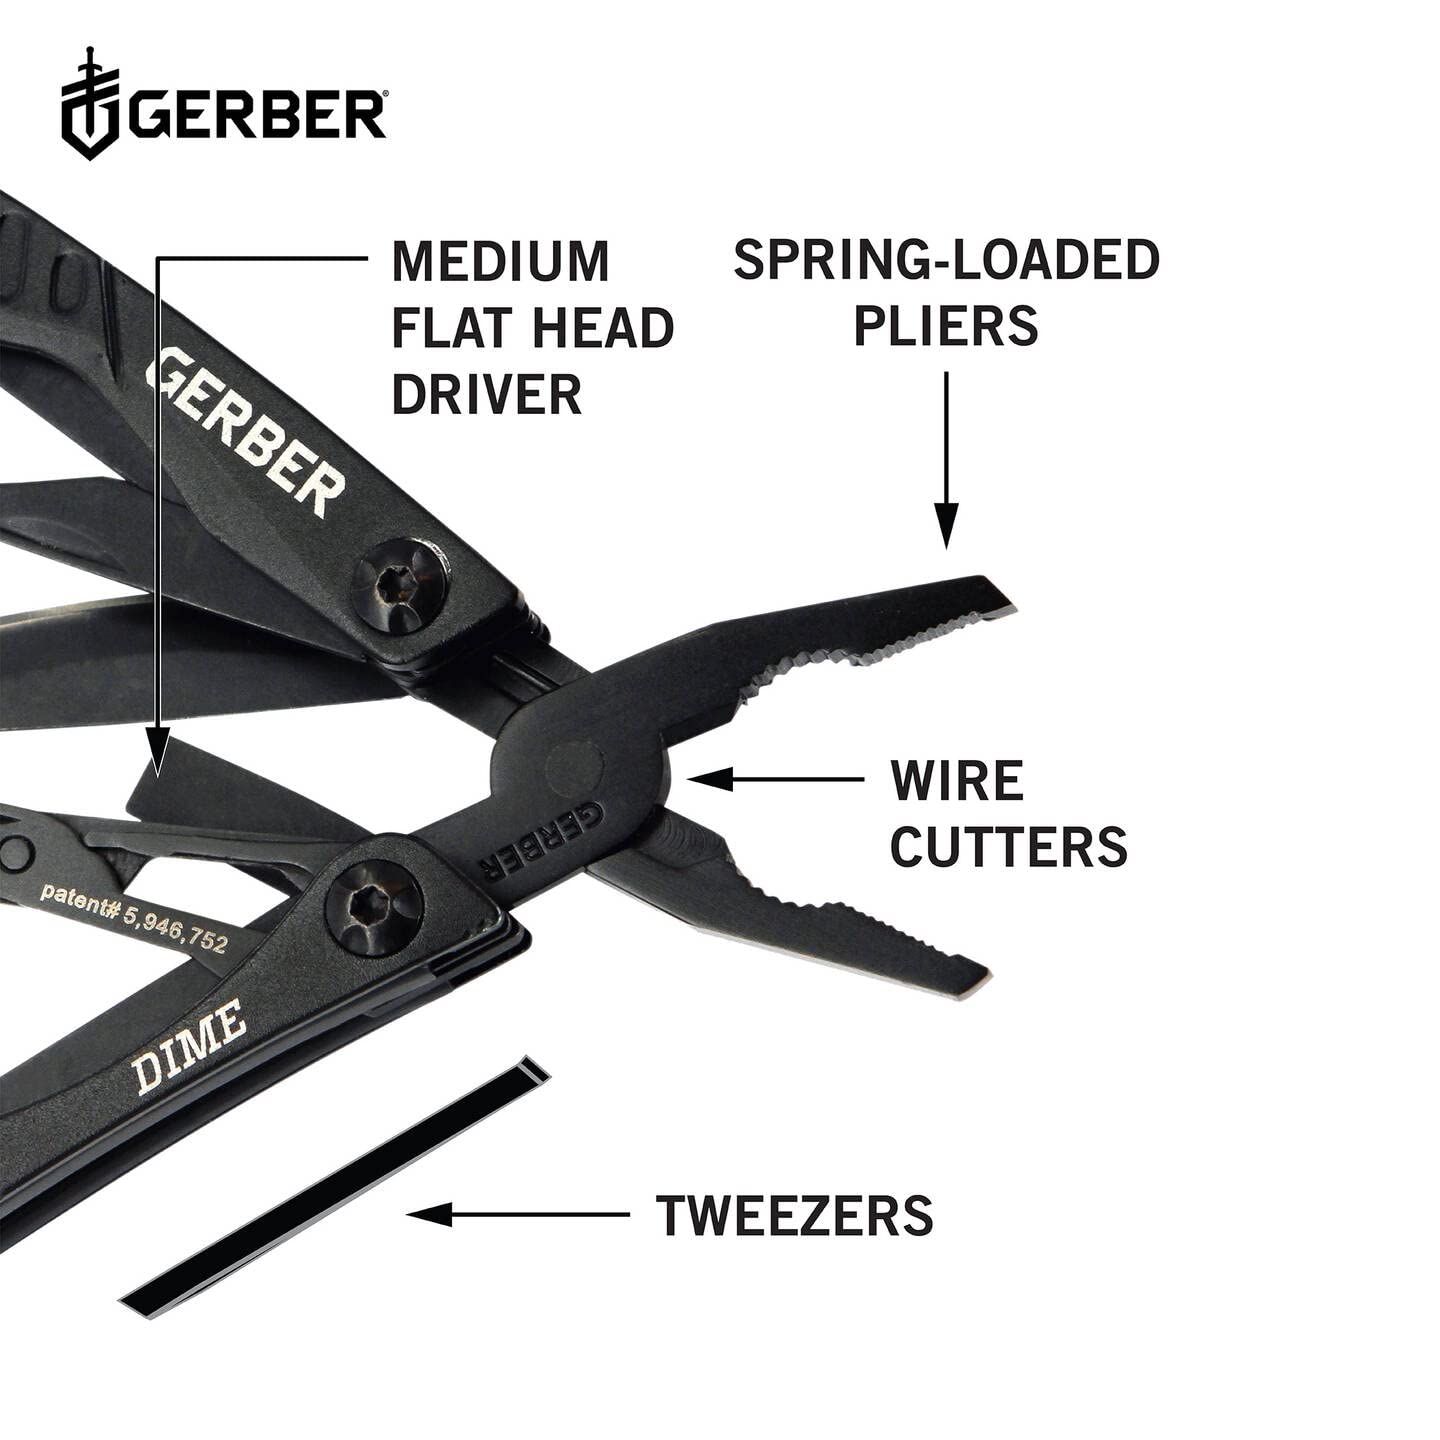 Gerber Gear 30-000469N 12-in-1 Dime Multitool Mini, Needle Nose Pliers Pocket Knife Keychain, Bottle Opener, EDC Gear, Black